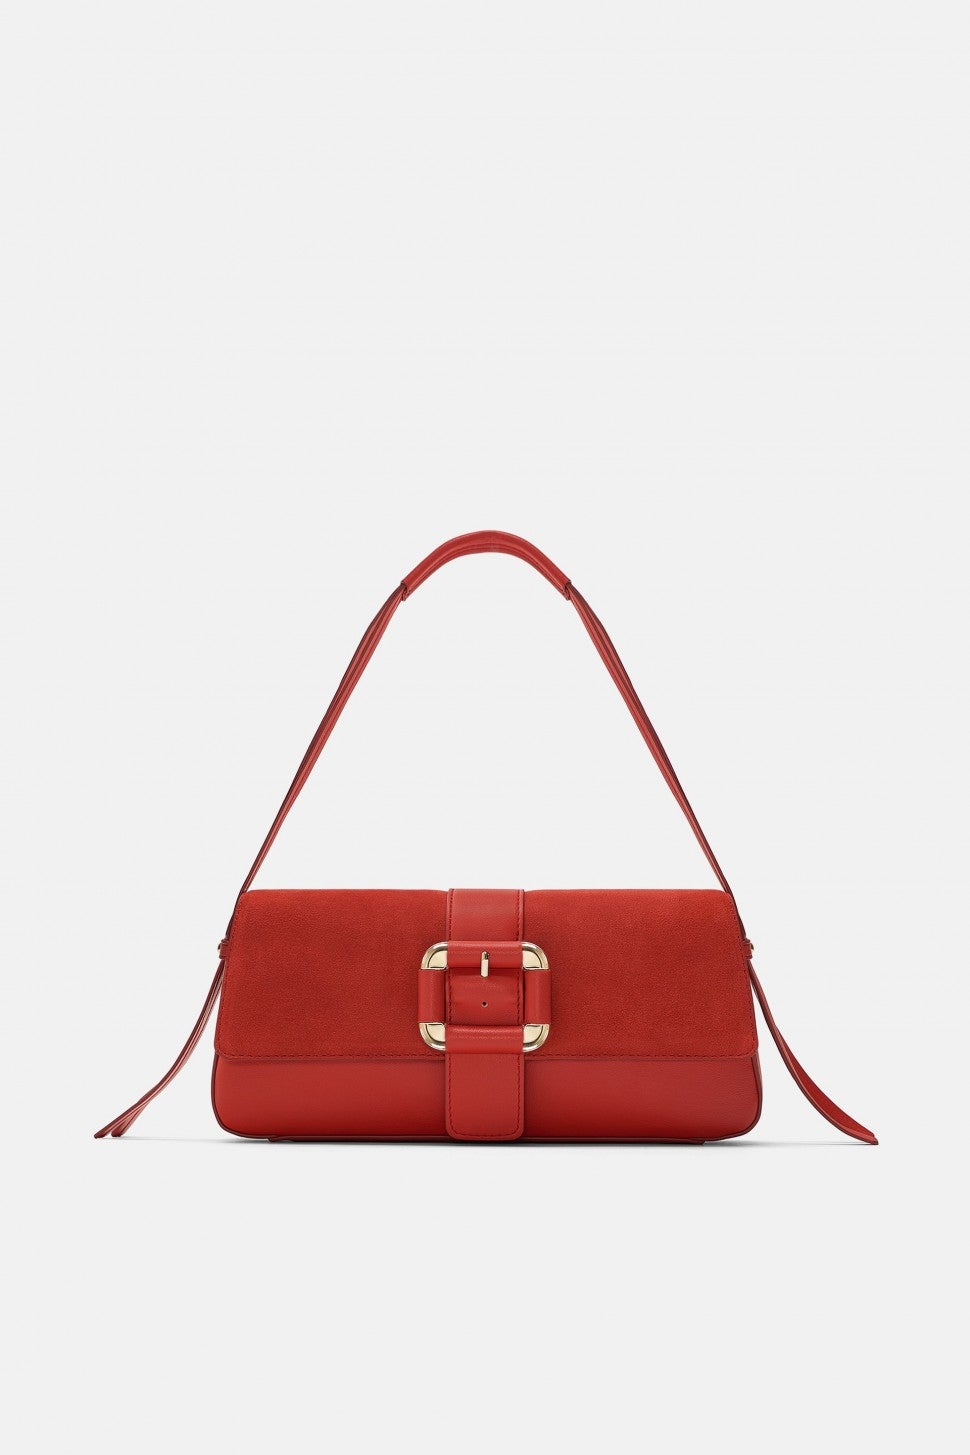 Zara red baguette bag